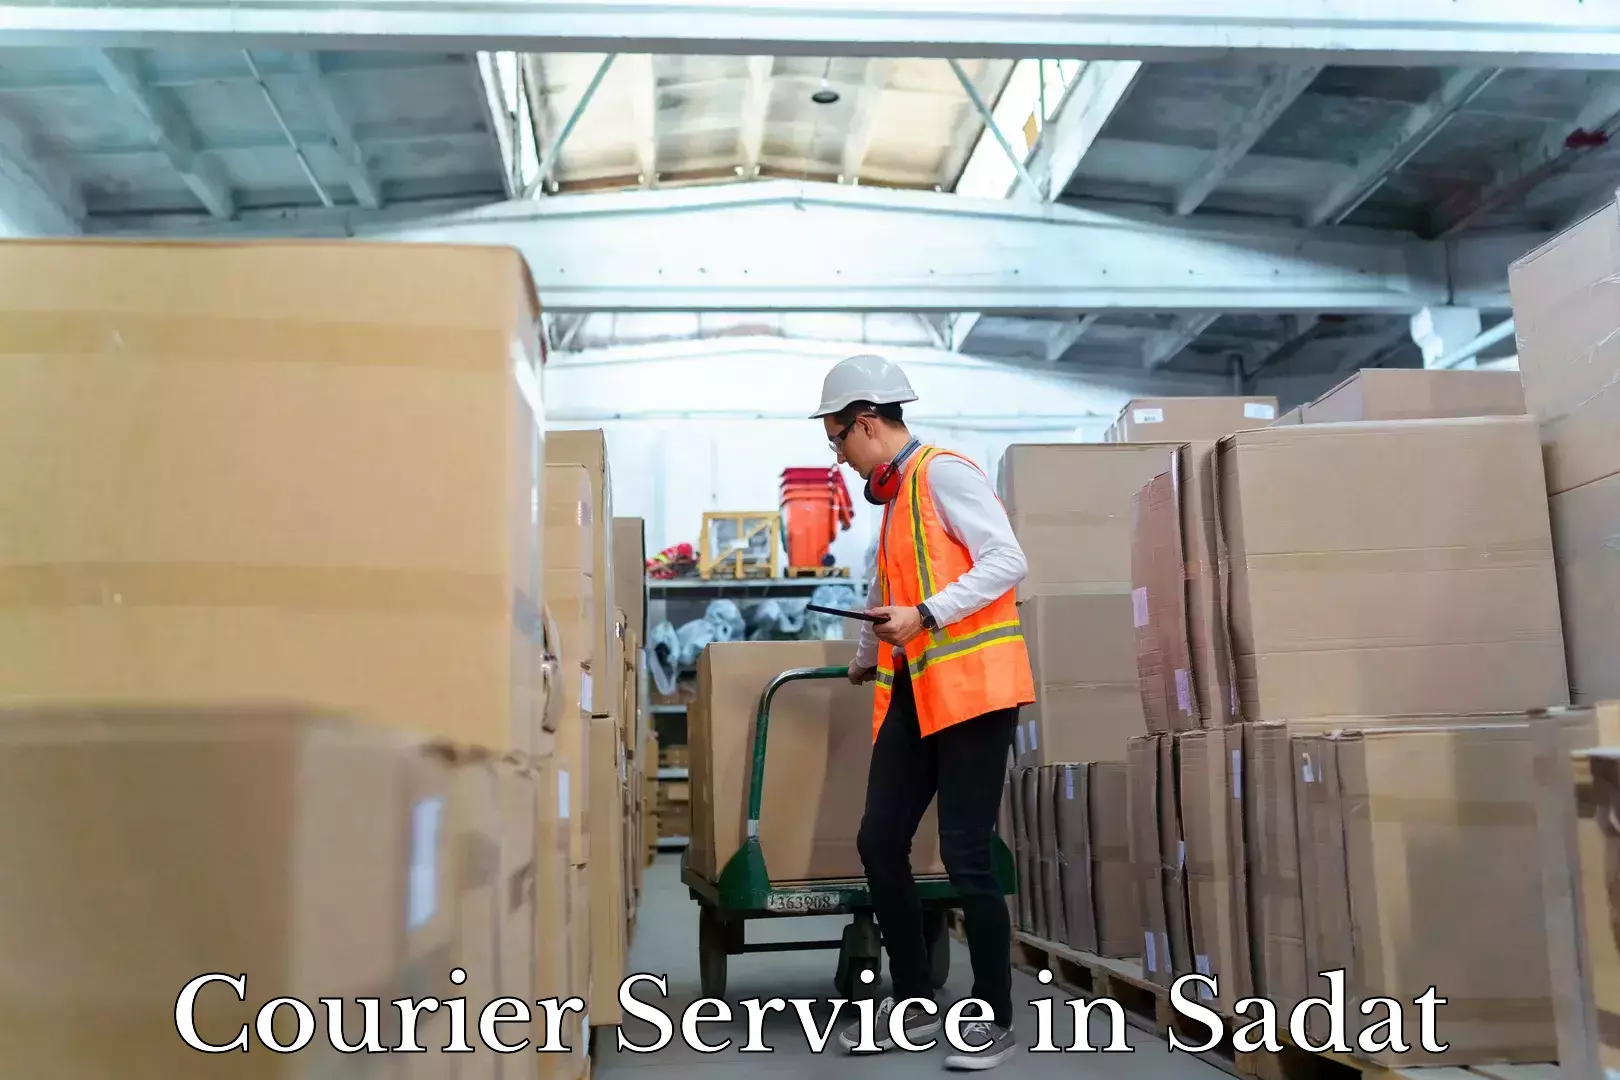 Affordable parcel service in Sadat